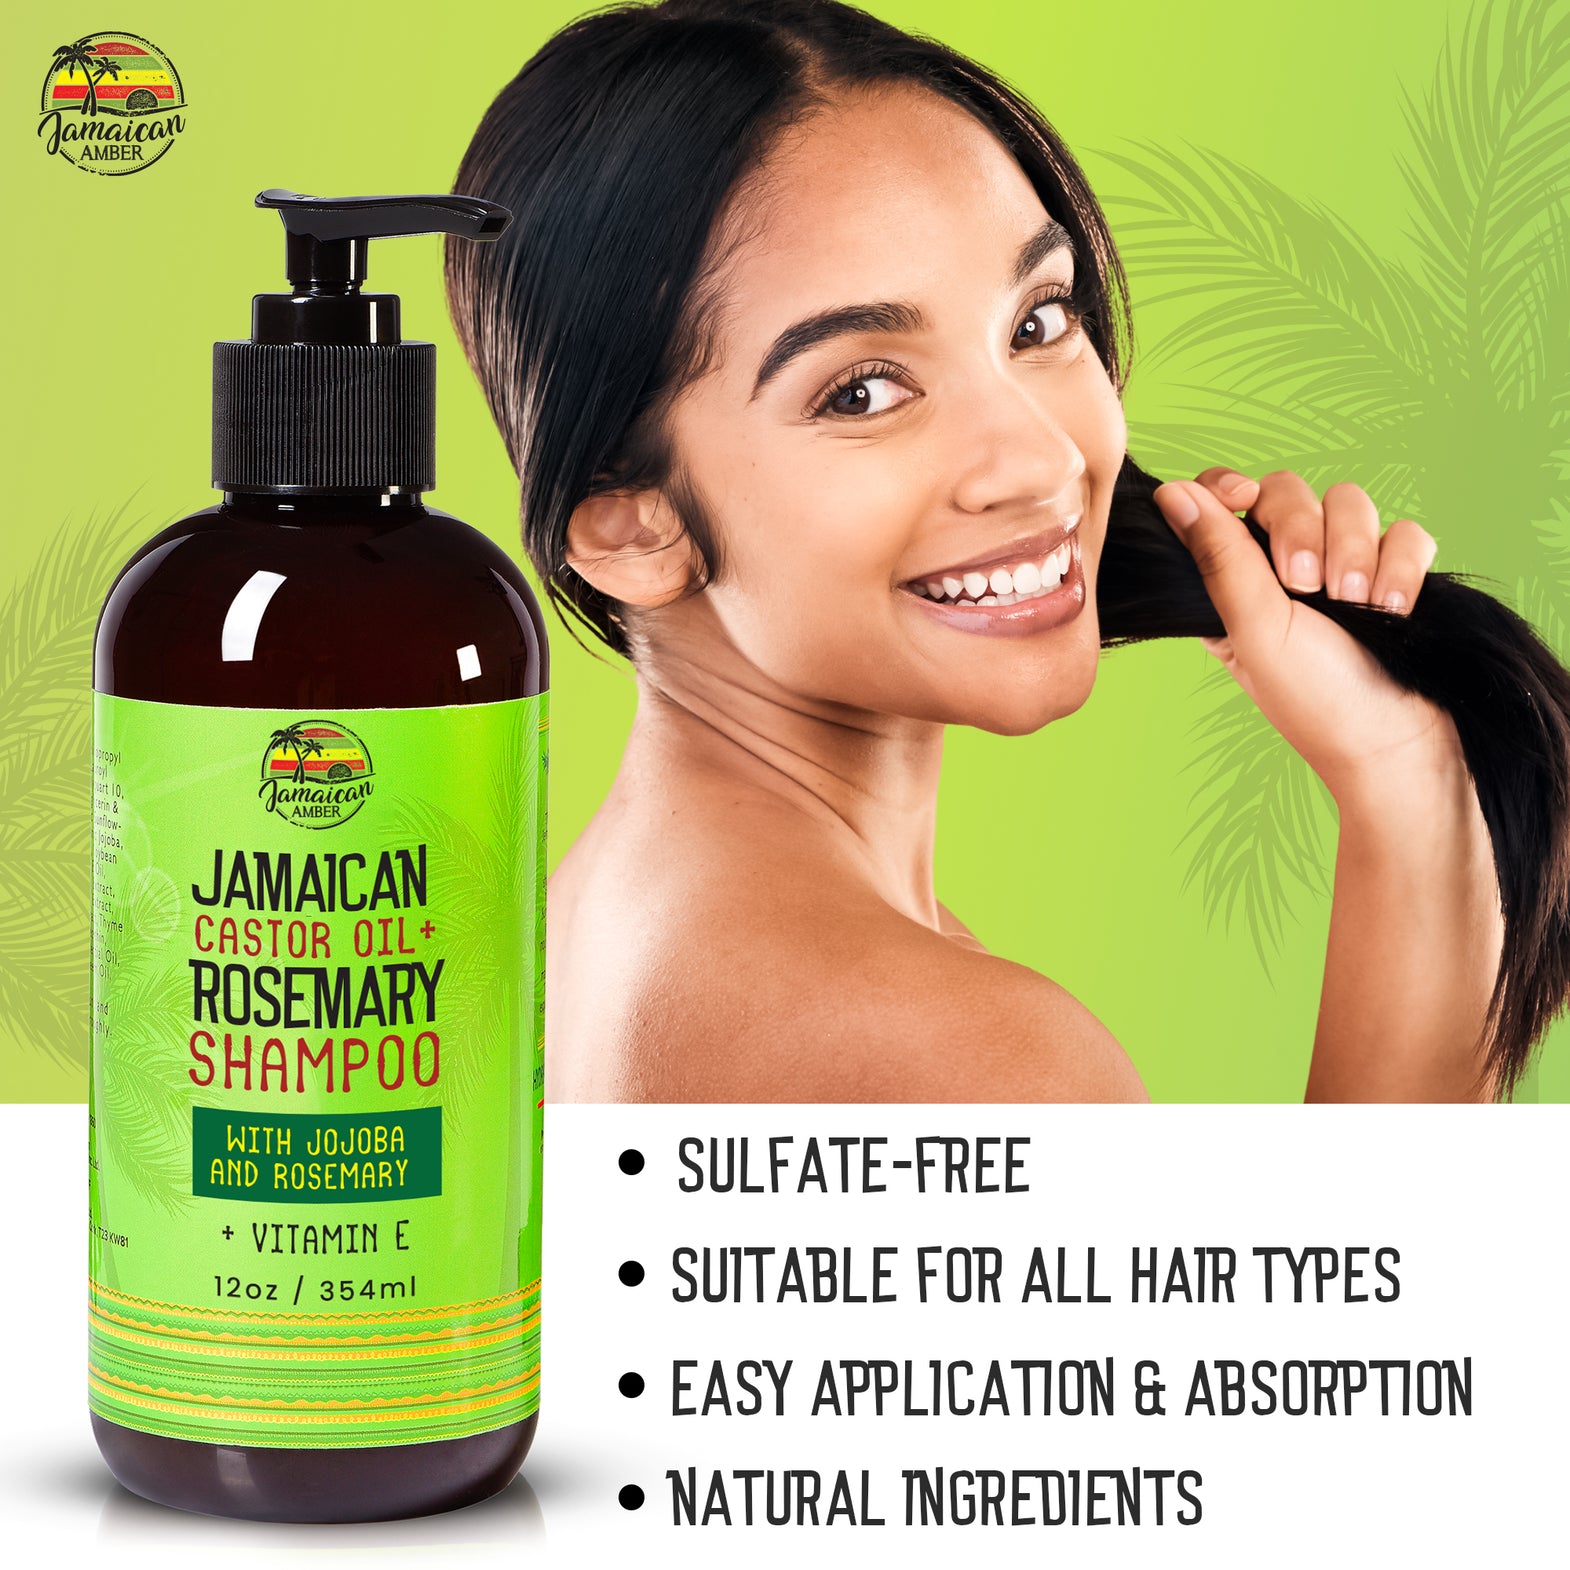 Jamaican Amber Jamaican Castor Oil + Rosemary Hair Shampoo With Jojoba 354ml